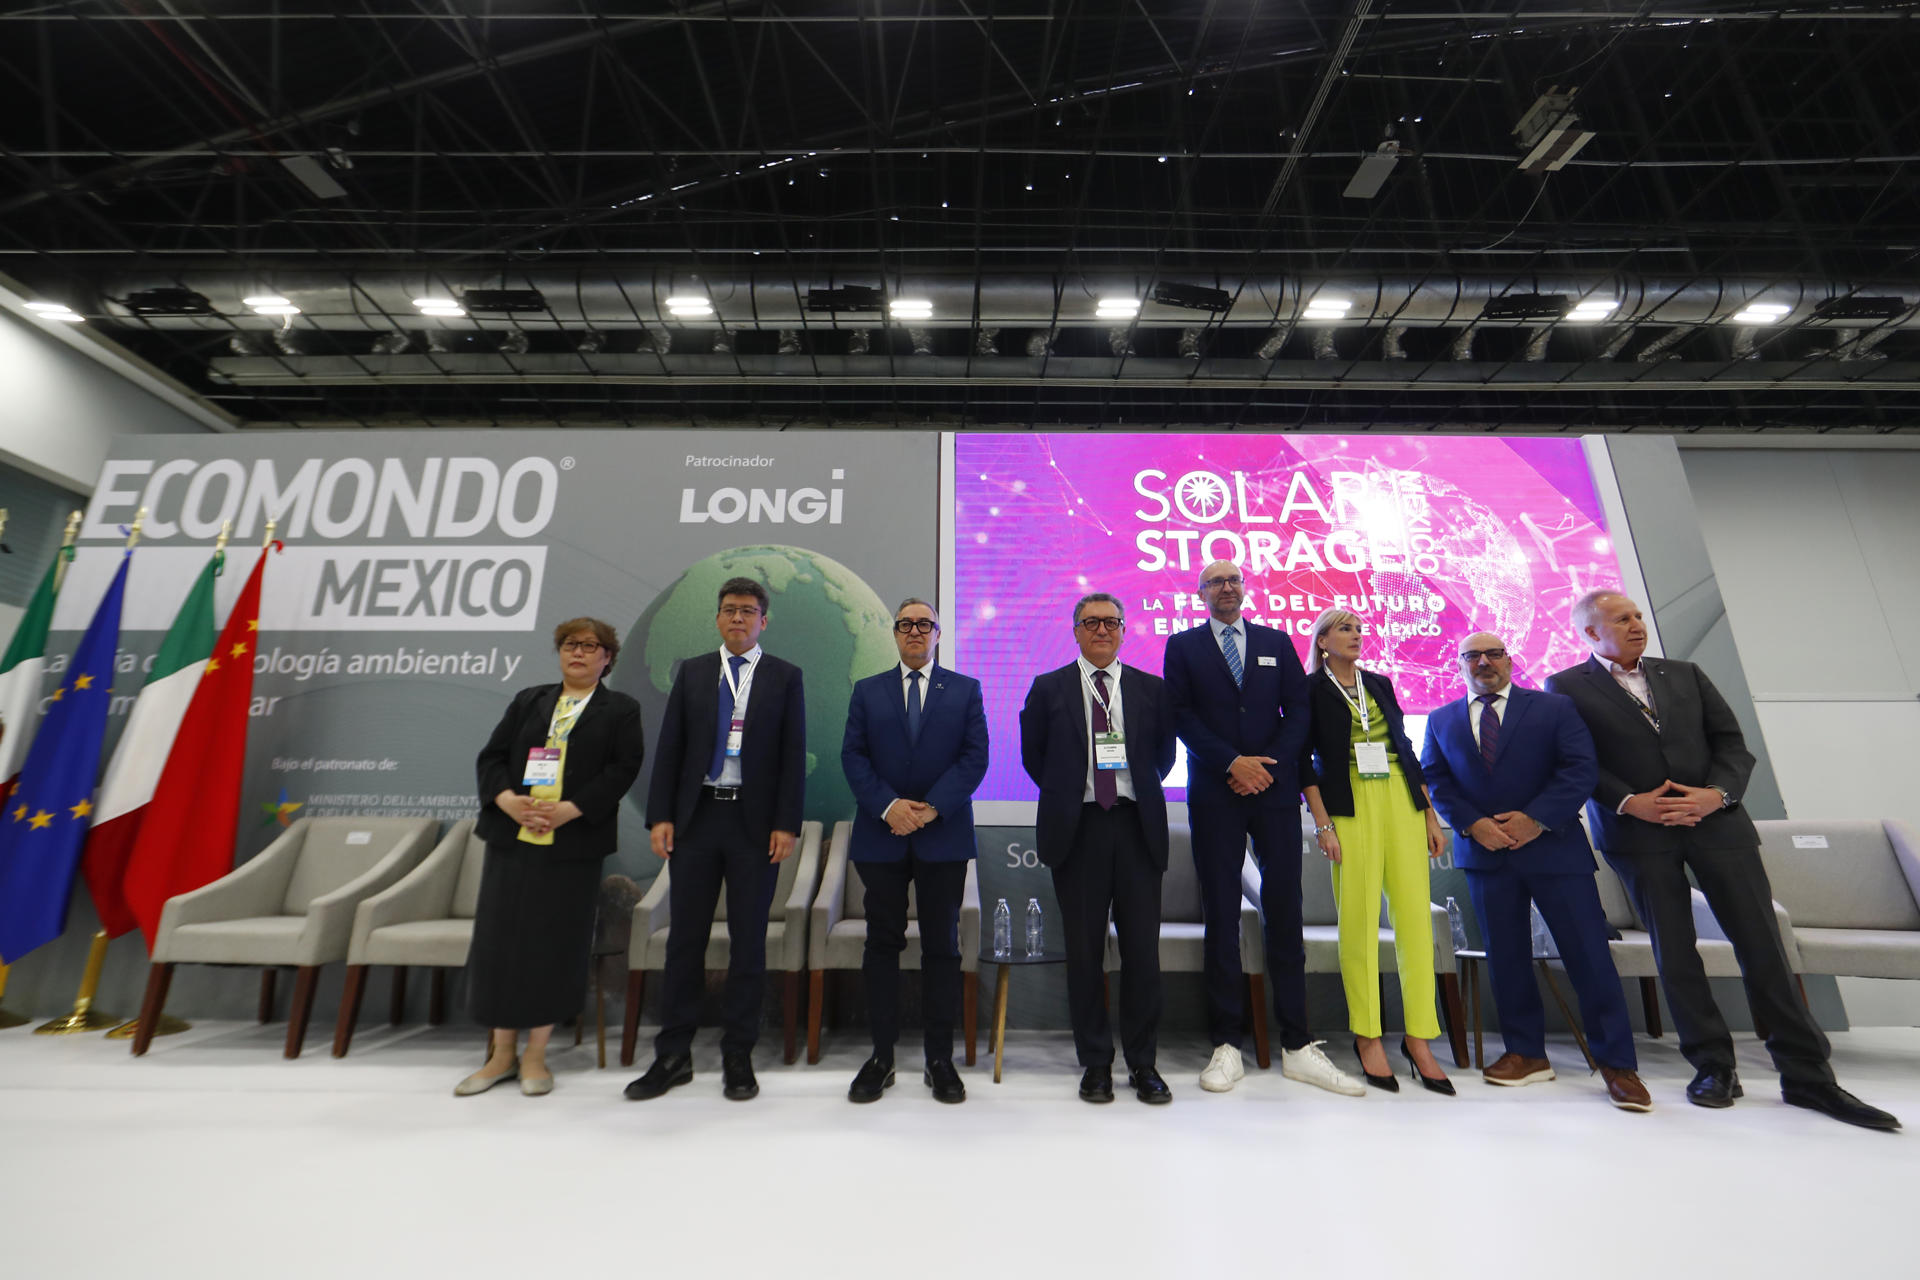 Miembros del presidium posan durante la inauguración del Solar Sotrage México este miércoles en la ciudad de Guadalajara (México). EFE/Francisco Guasco